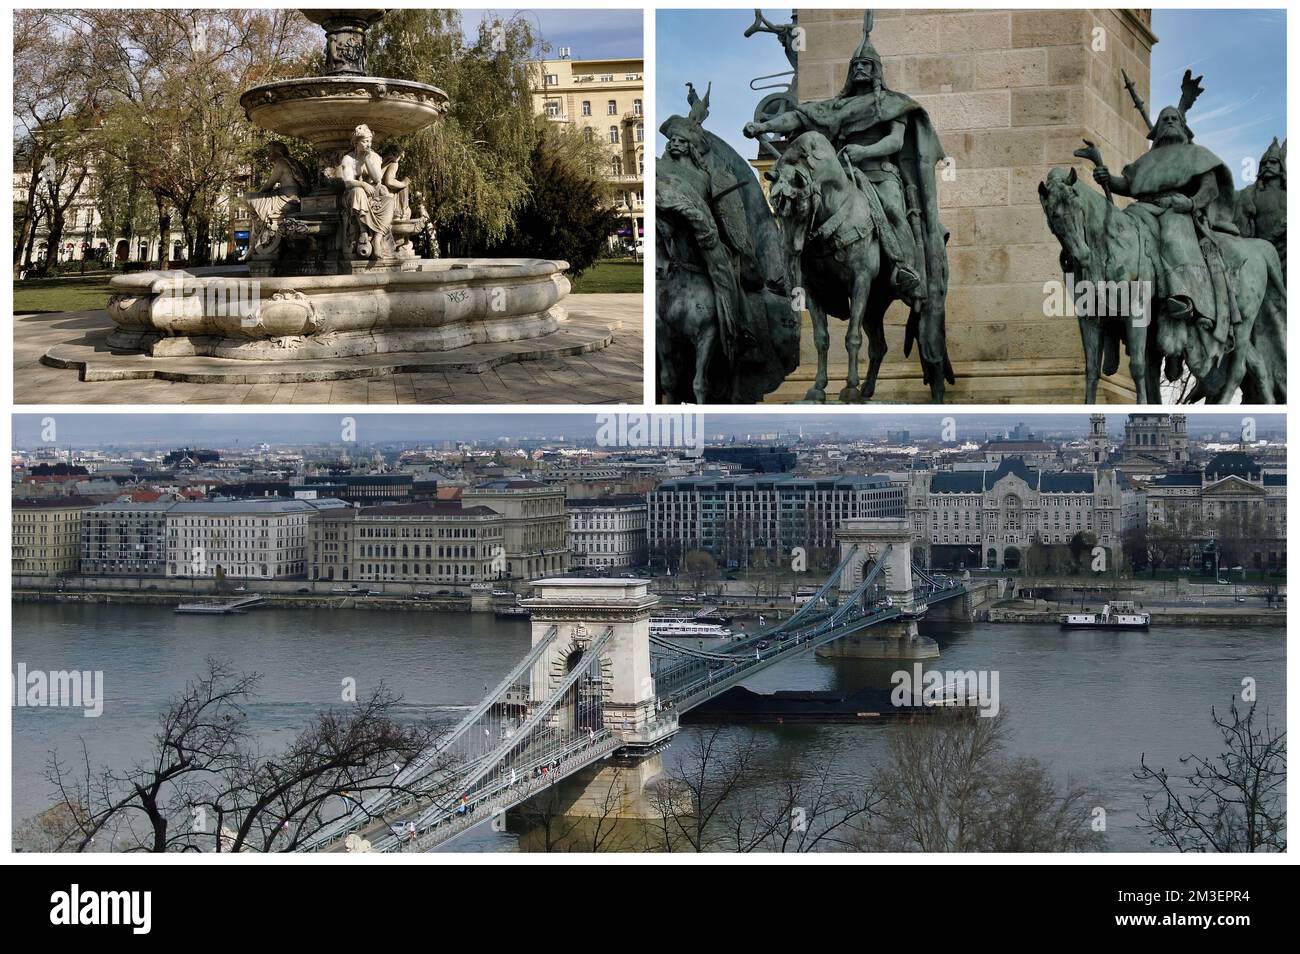 Budapest La hermosa capital de Hungría, una de las ciudades más bellas que bordean el Danubio Foto de stock